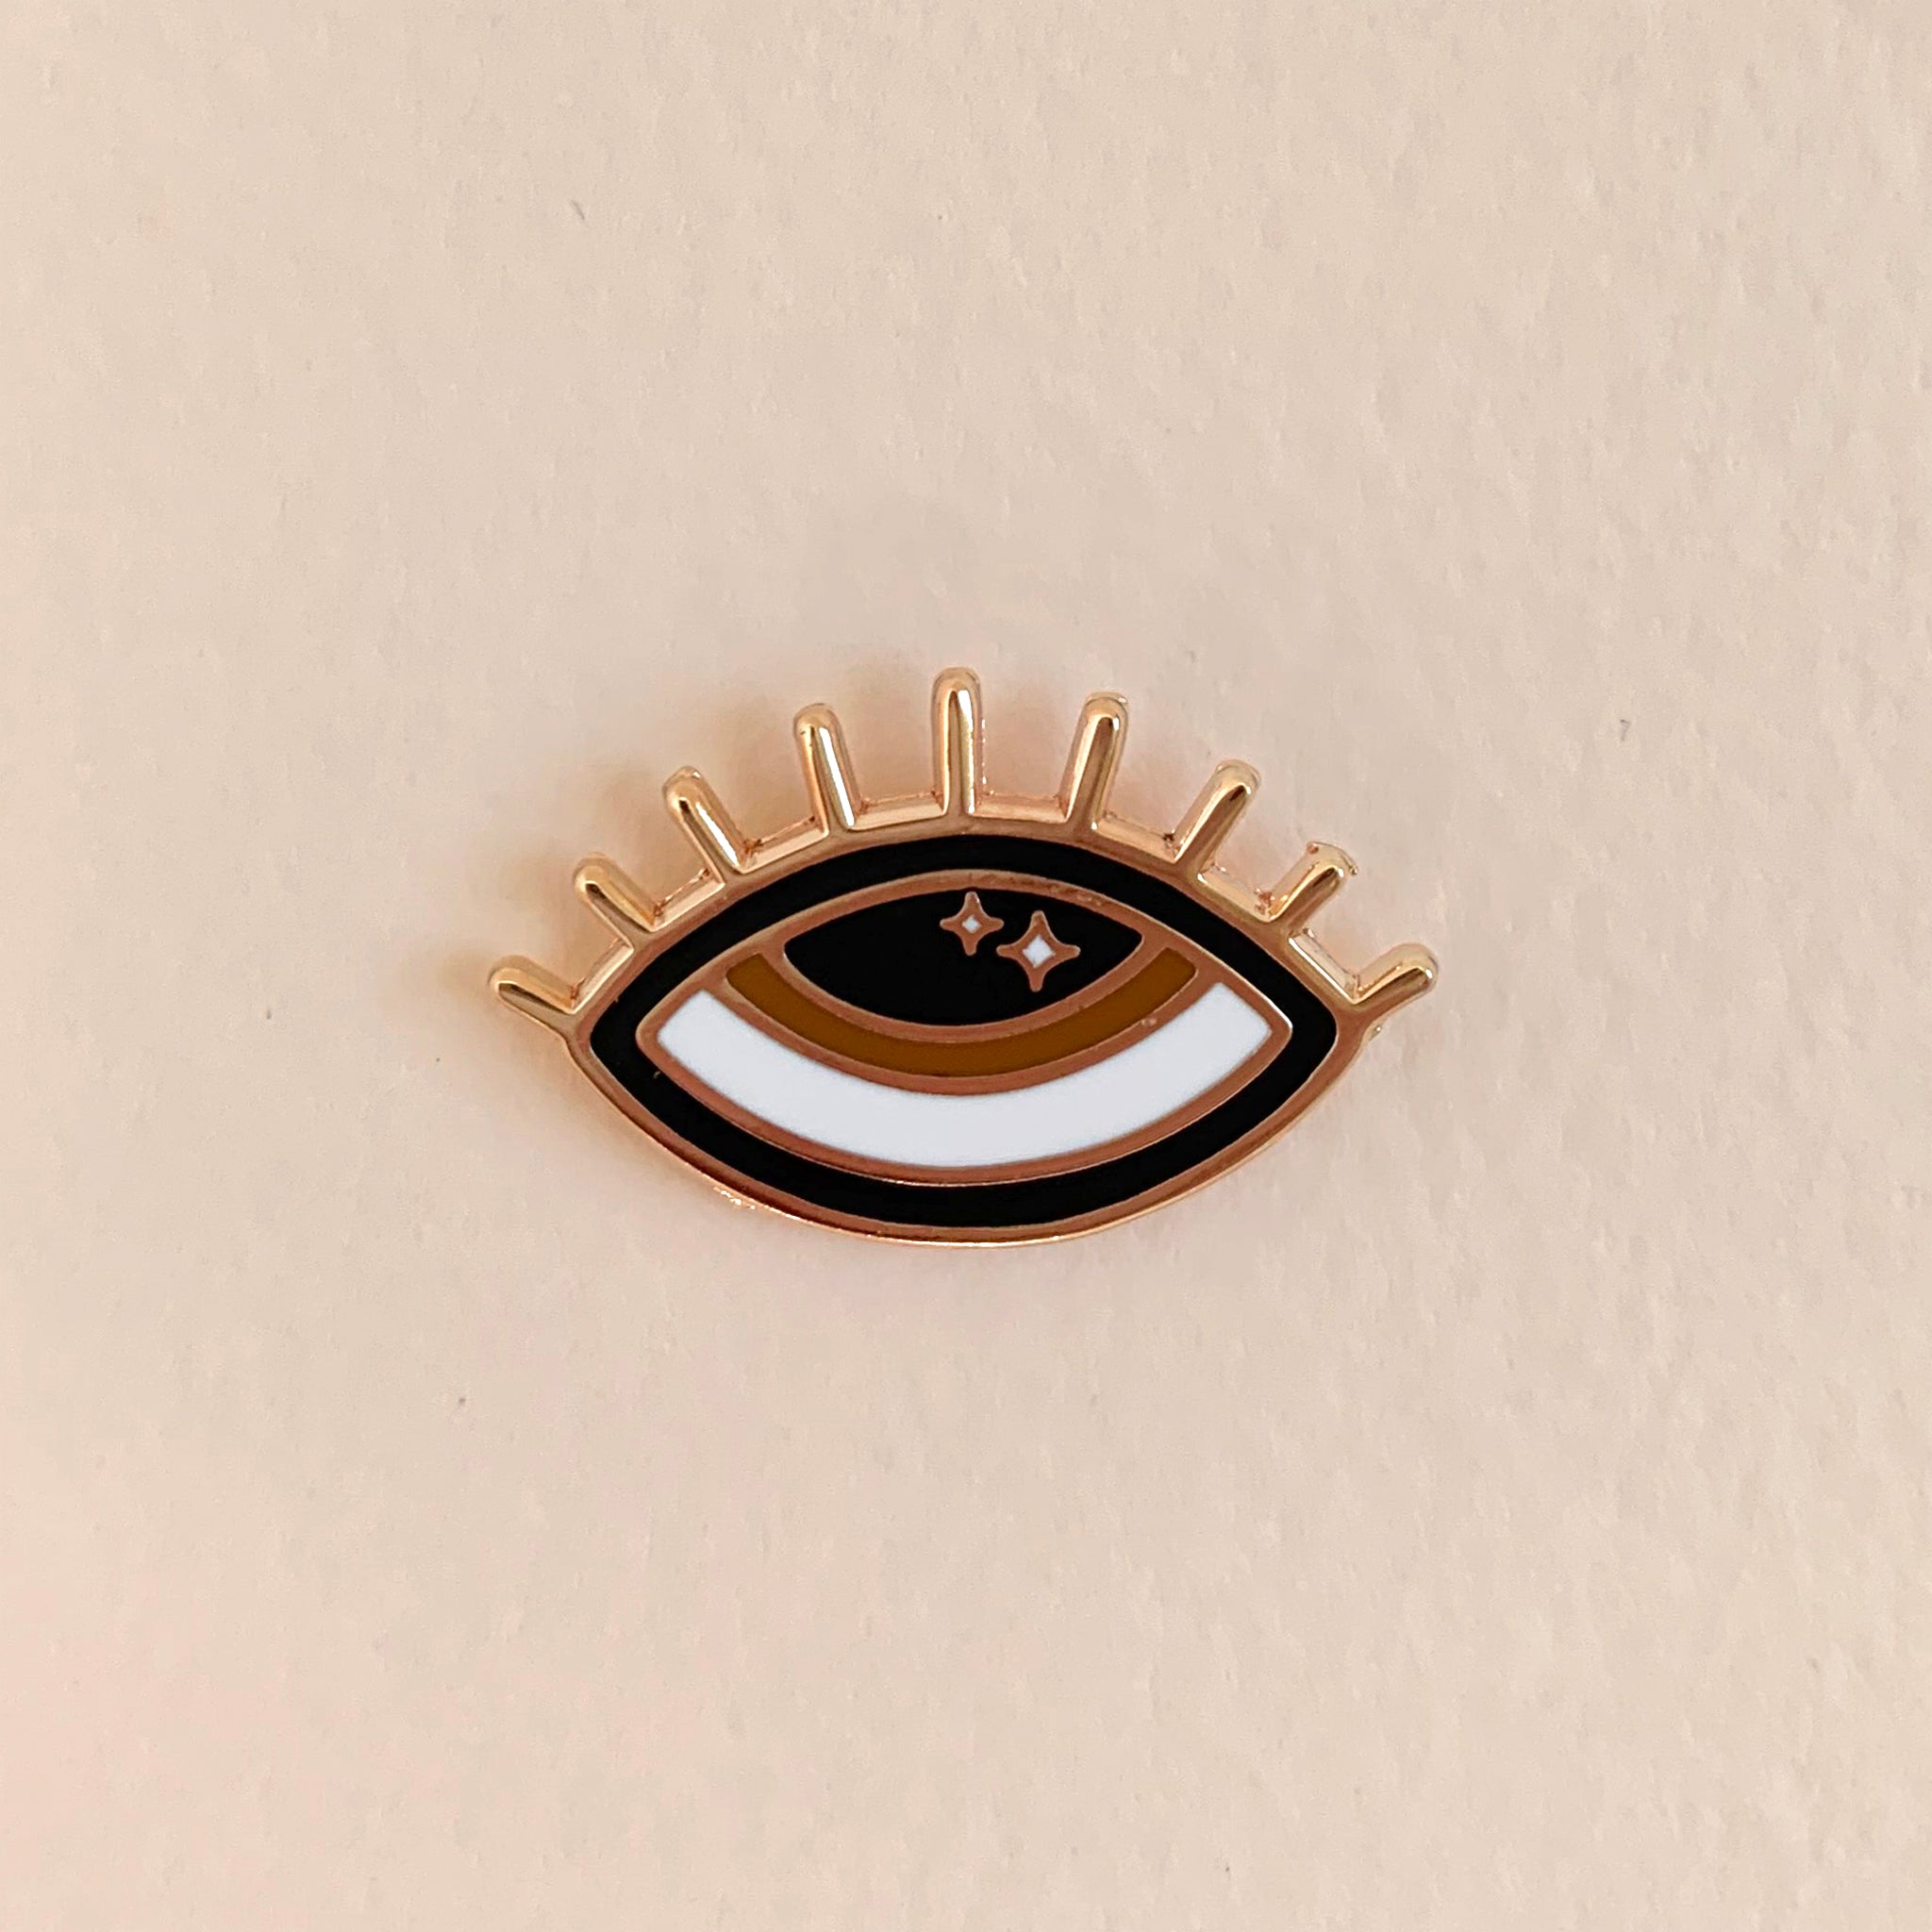 Enamel Pin, "Third Eye in Brown"